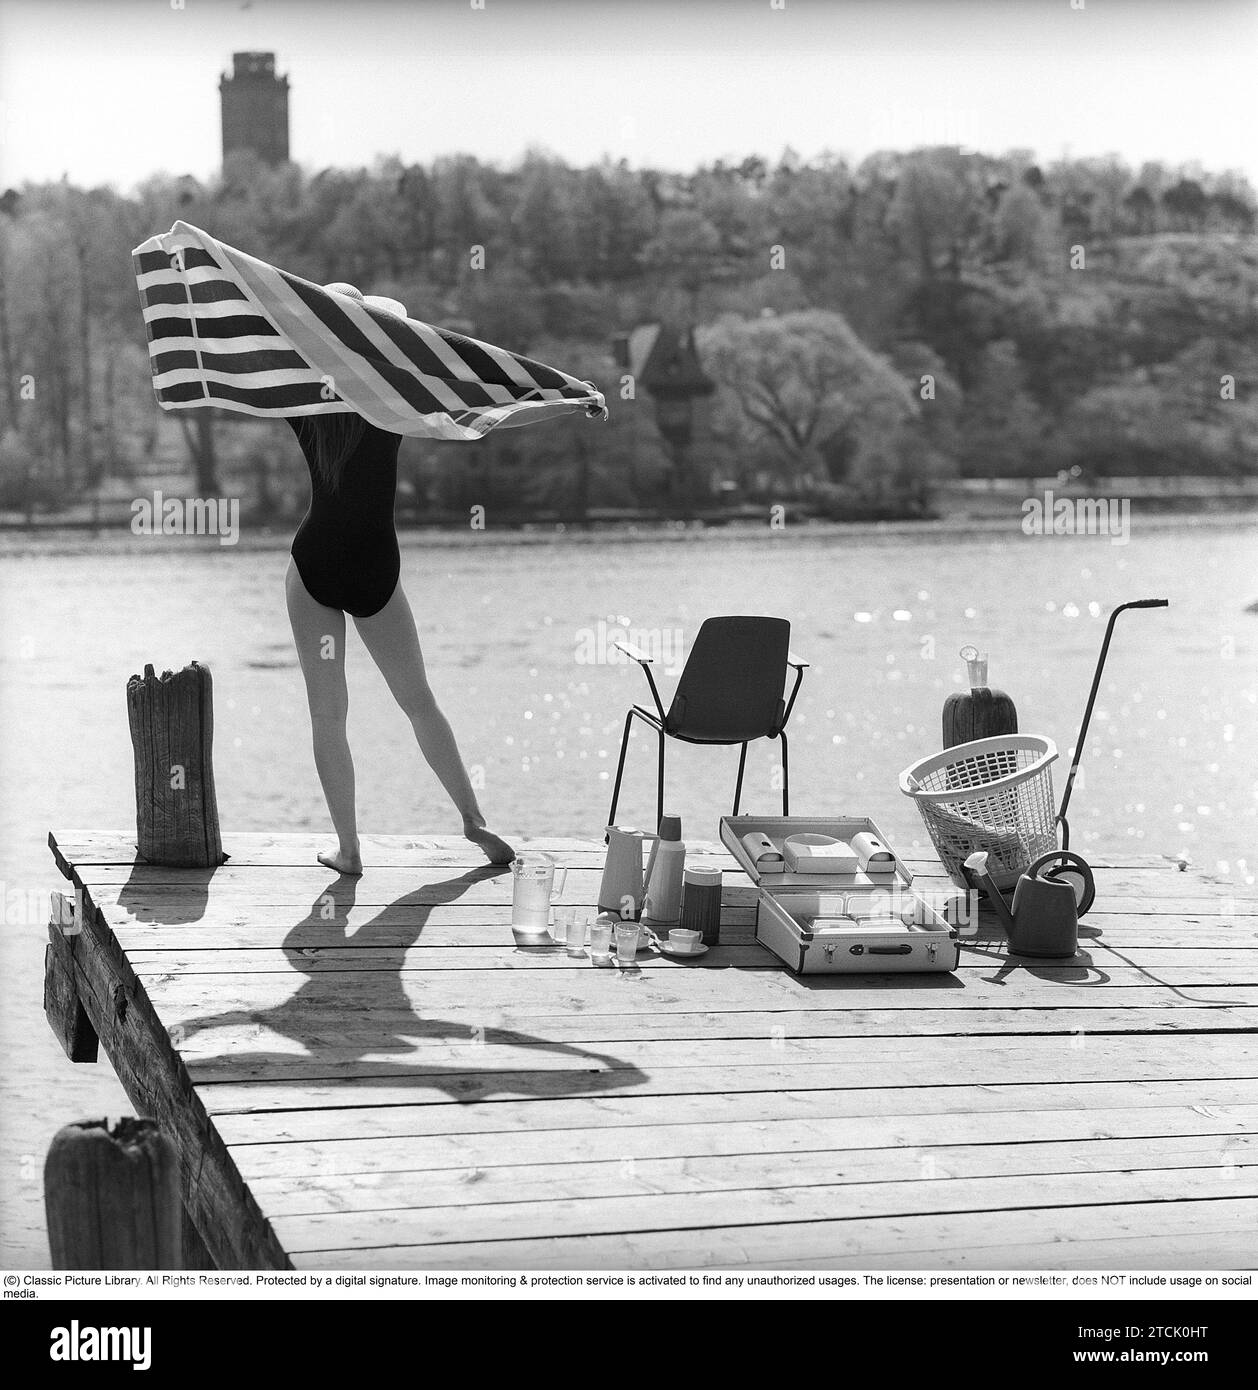 style de vie des années 1950. Une jeune femme au soleil portant un maillot de bain. Dans l'image, il y a beaucoup d'objets opportuns en plastique qui étaient populaires à l'époque. Surtout lorsque vous êtes en vacances d'été ou en camping. Un cas pratique pour les transporter. 1958 Kristoffersson réf DB96-1 Banque D'Images